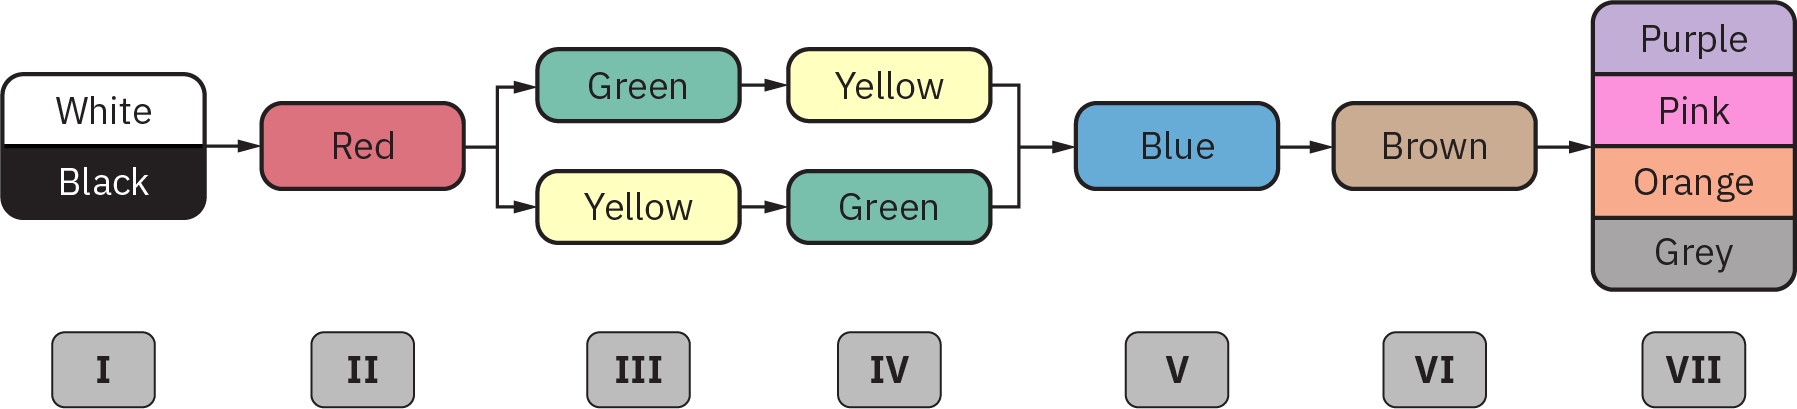 Un diagramme illustrant ce qui suit : à l'étape 1, des marqueurs pour « blanc » et « noir » ; à l'étape 2, un marqueur pour « rouge » ; à l'étape 3, des marqueurs pour « vert » et « jaune » ; à l'étape 4, des marqueurs pour « jaune » et « vert » ; à l'étape 5, « bleu » ; à l'étape 6, « brun » ; et à l'étape 7, « violet », « rose », « orange » et « Gris ».